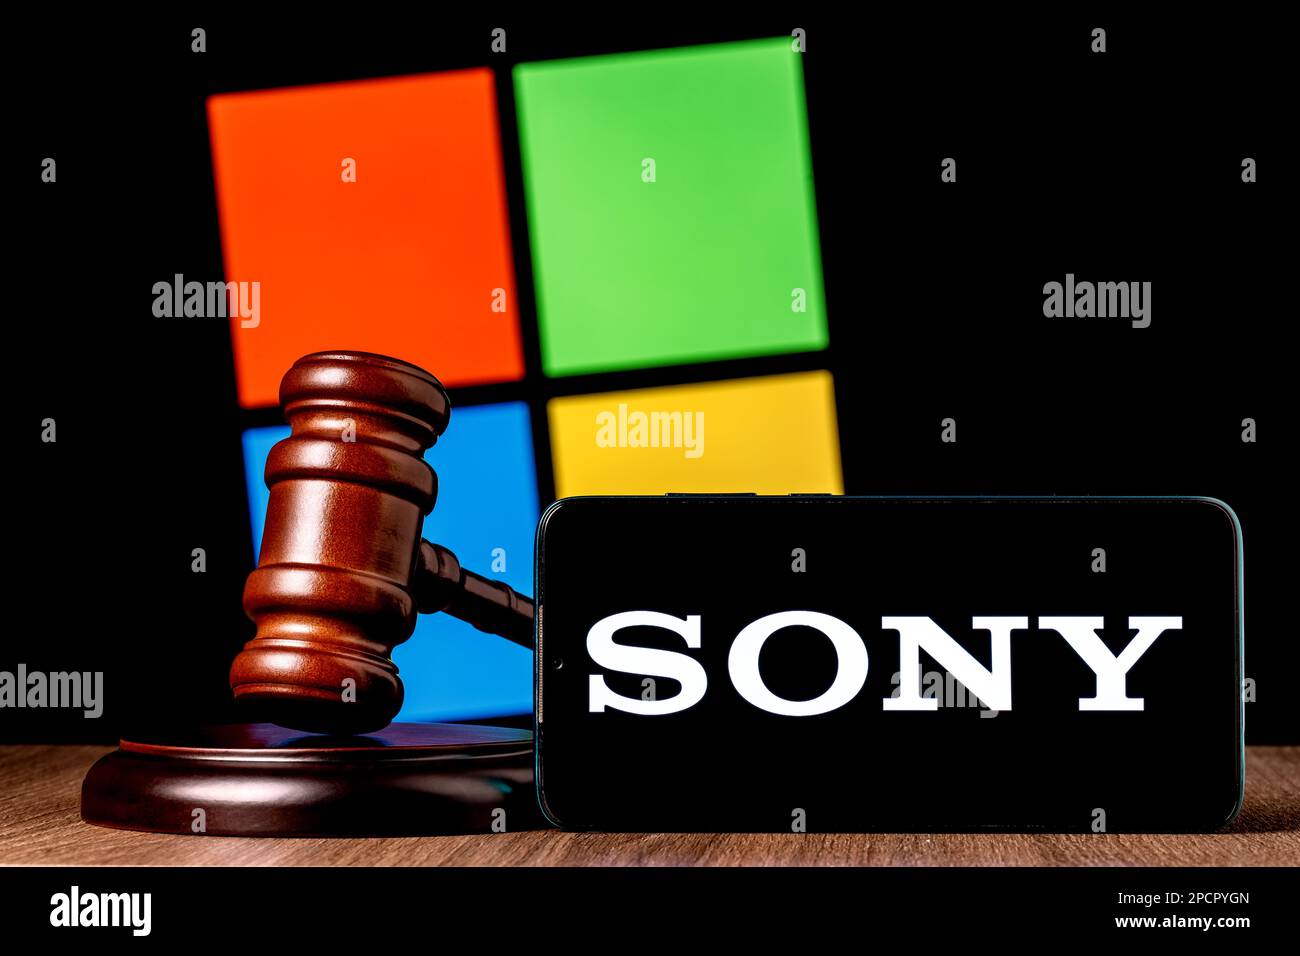 Gavel et smartphone avec logo SONY à l'écran sur la table, sur fond du logo de la société Microsoft. Le concept d'essai entre Sony et Microsoft. Banque D'Images